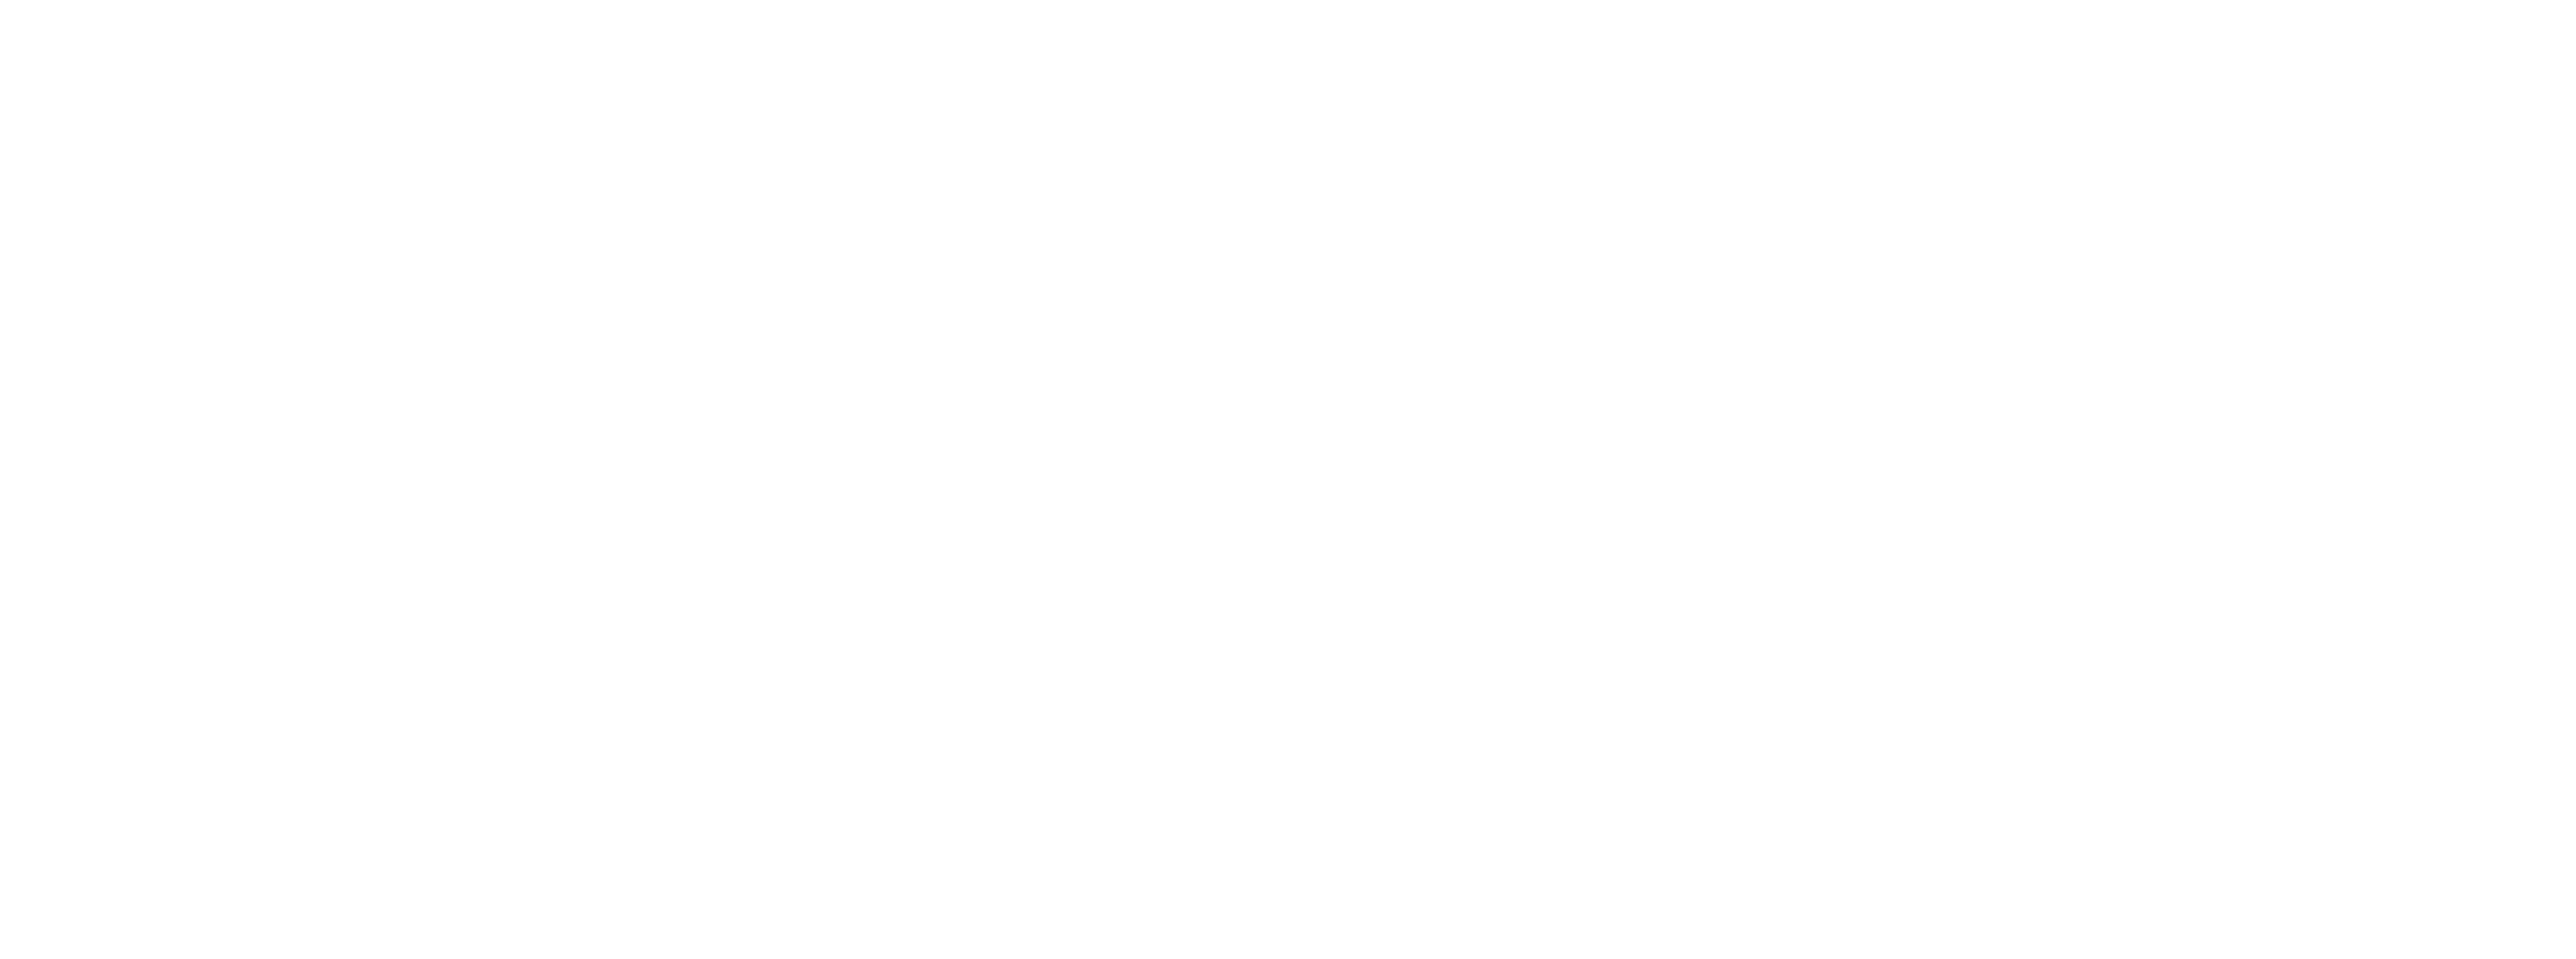 VIHAAN Hospital